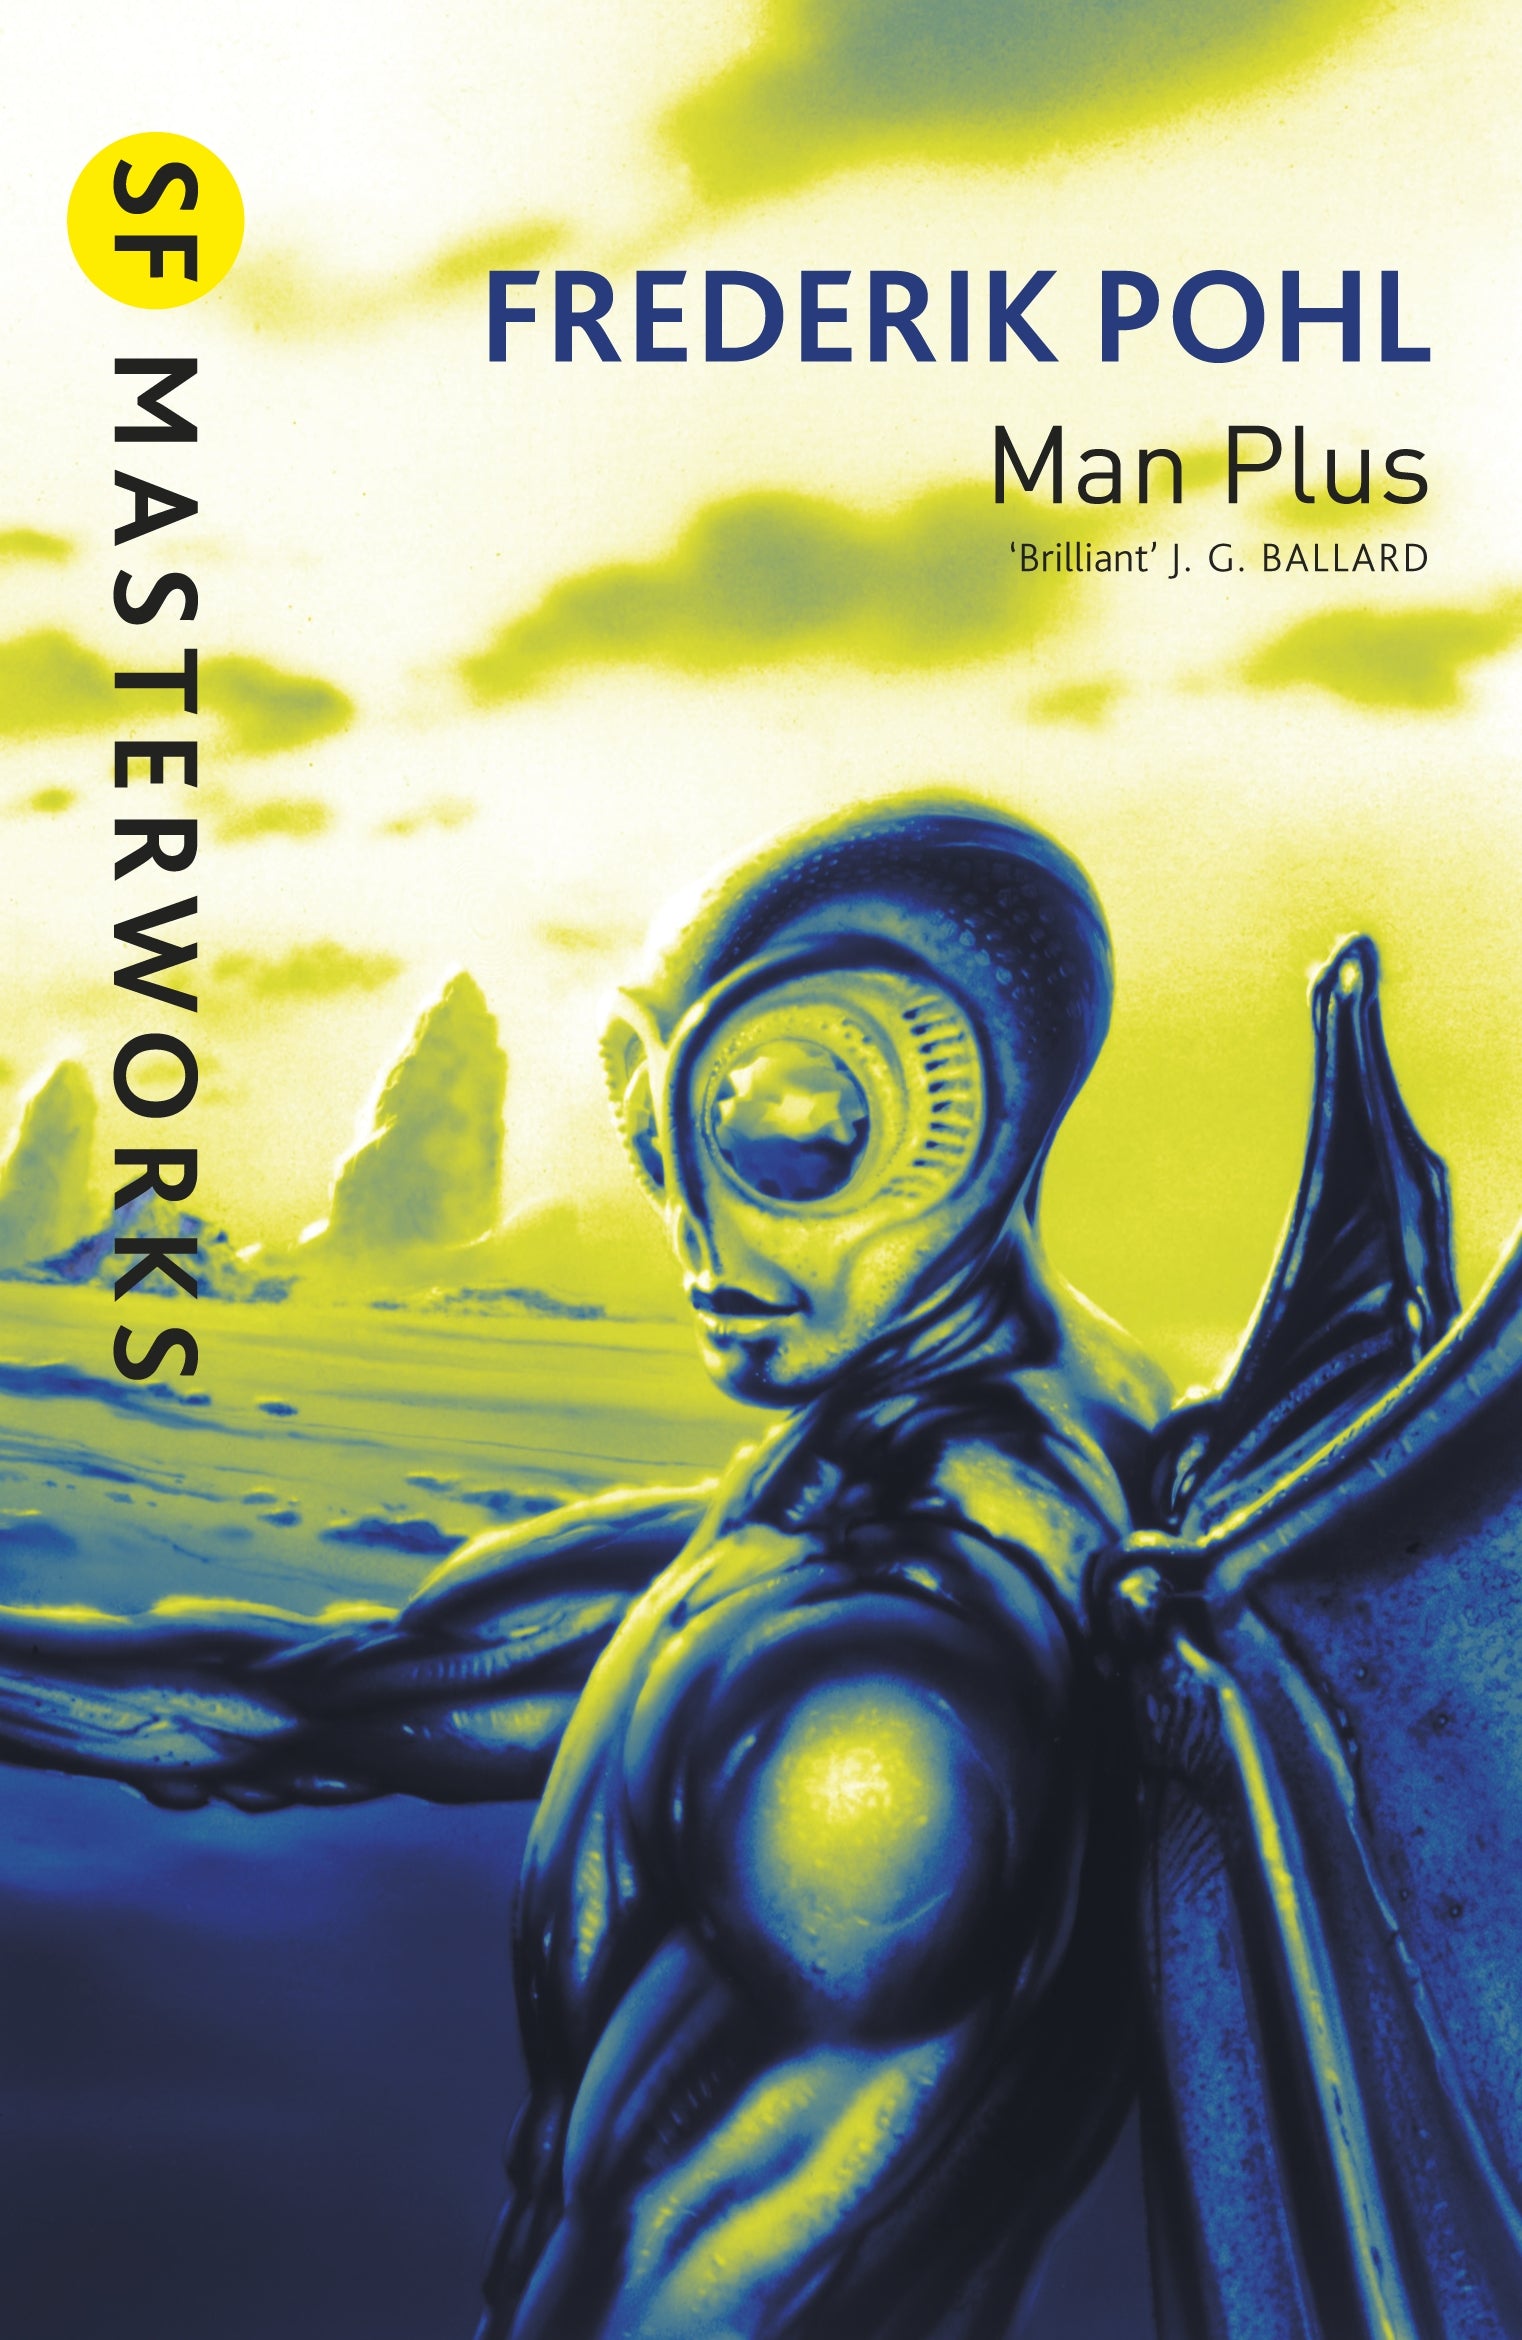 Man Plus by Frederik Pohl